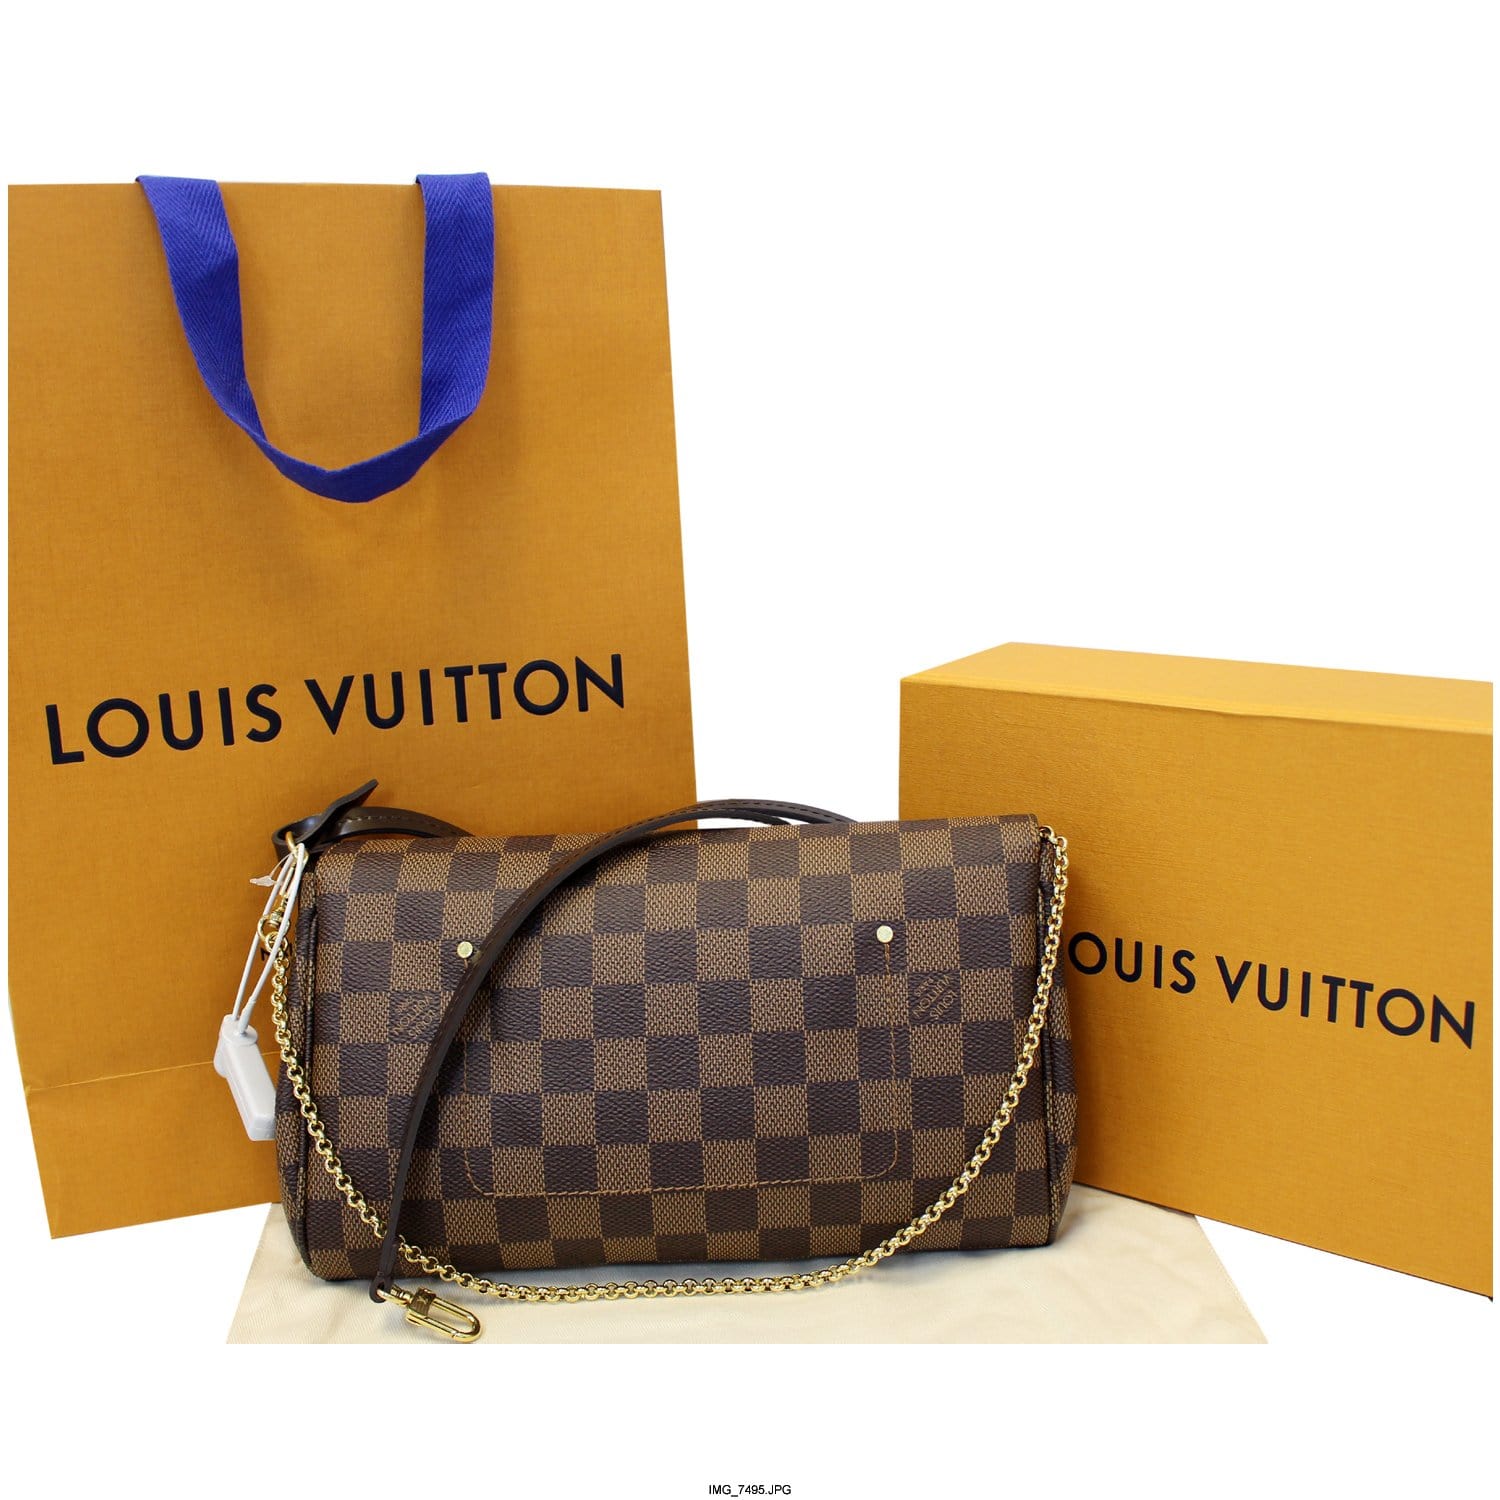 Authentic LOUIS VUITTON Damier Favorite PM N41276 Shoulder bag